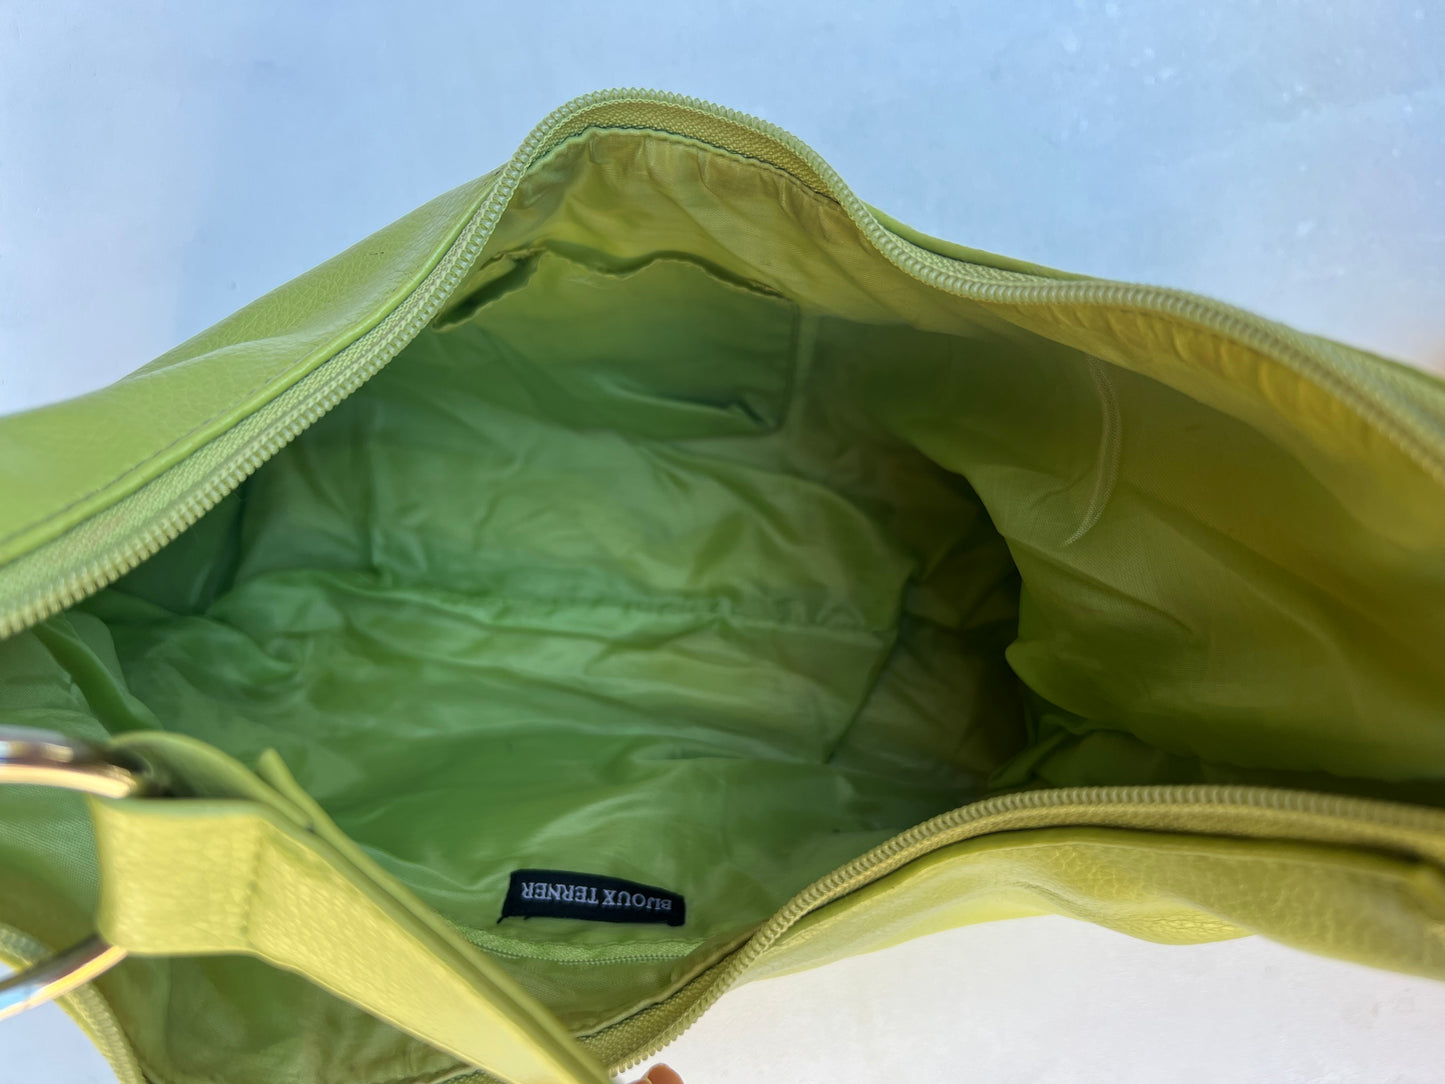 Leather Shoulder Bag - Green